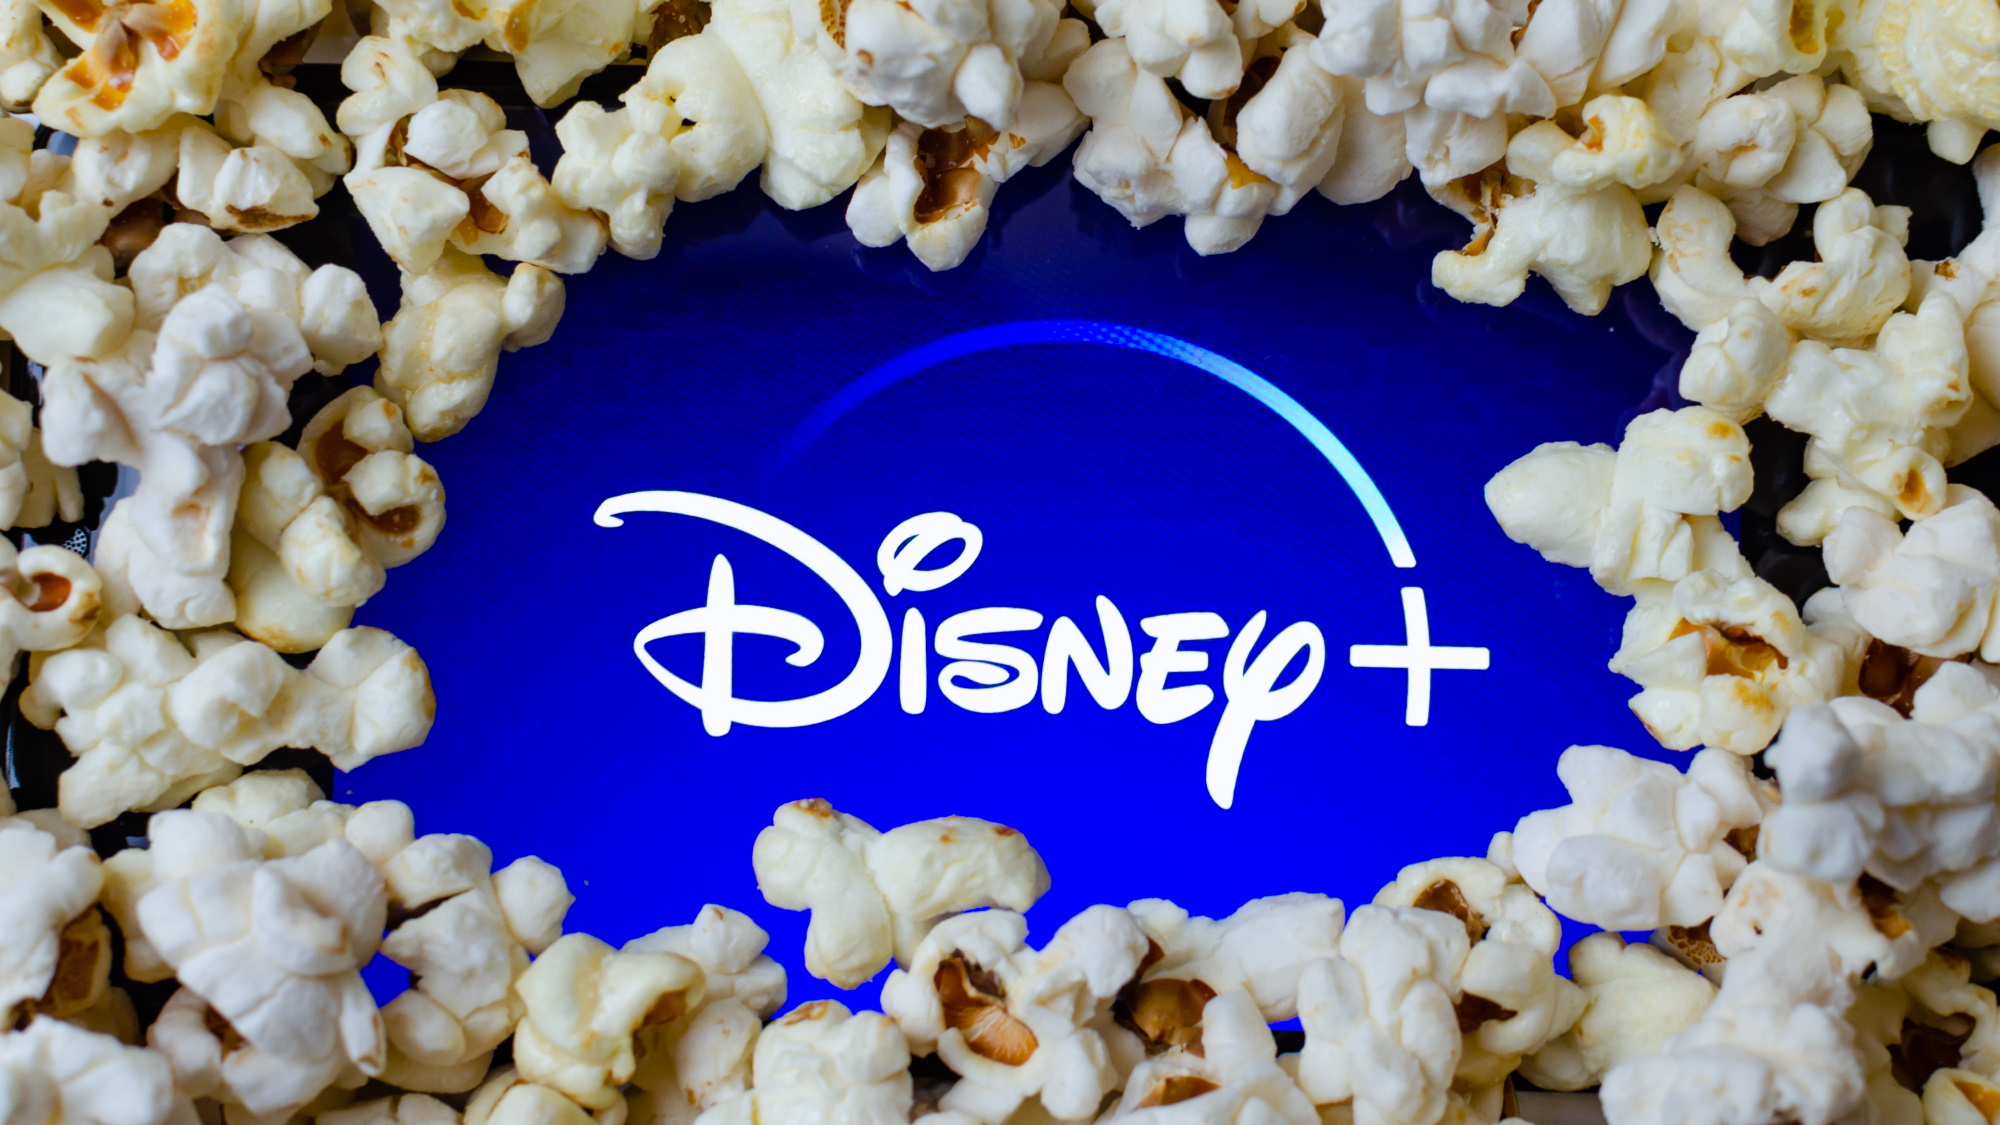 Logo Disney Plus dengan popcorn